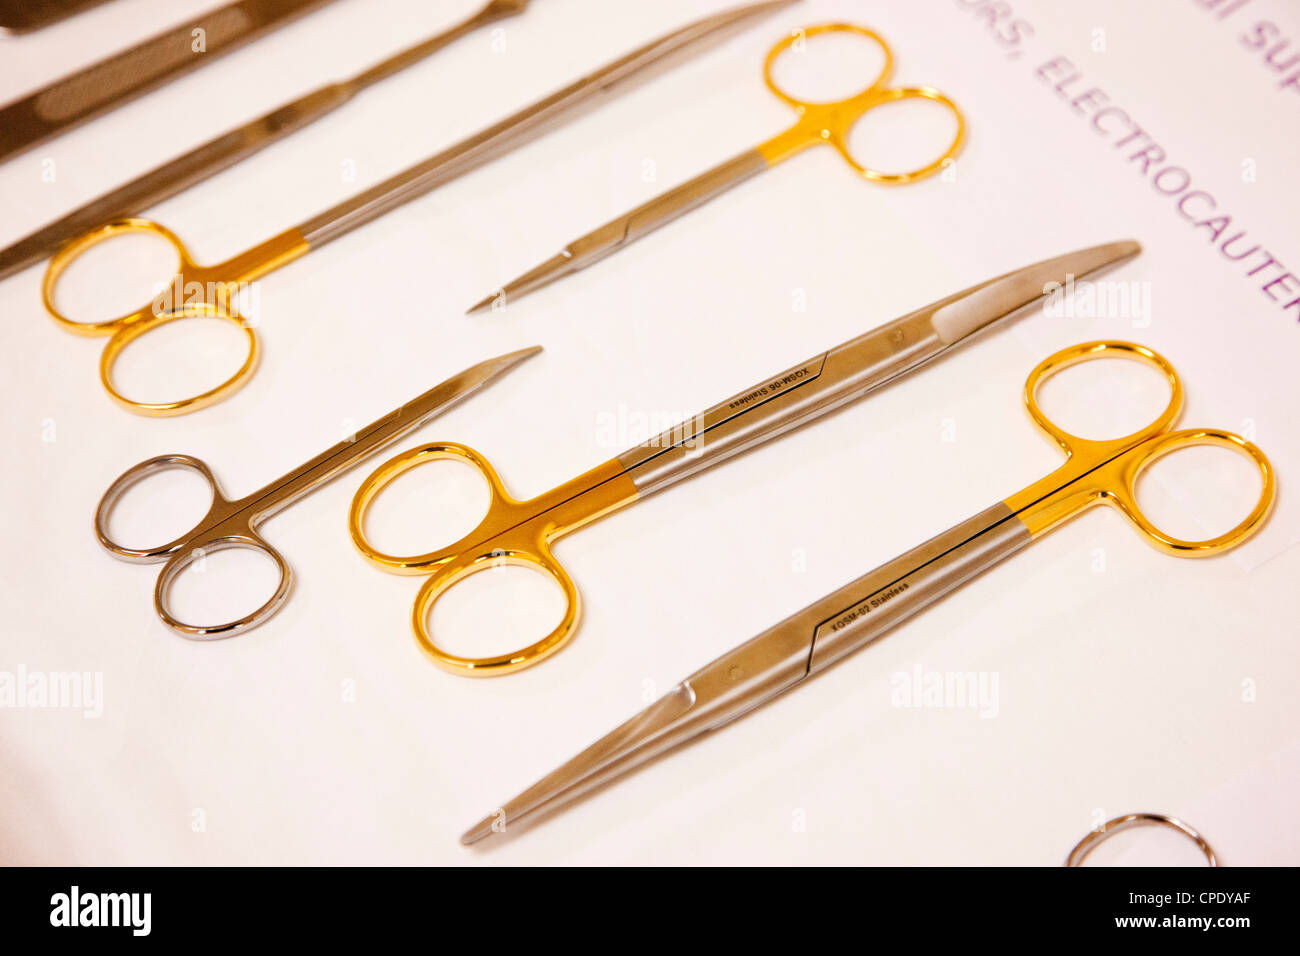 Los instrumentos y herramientas utilizadas en los procedimientos operativos médicos Foto de stock